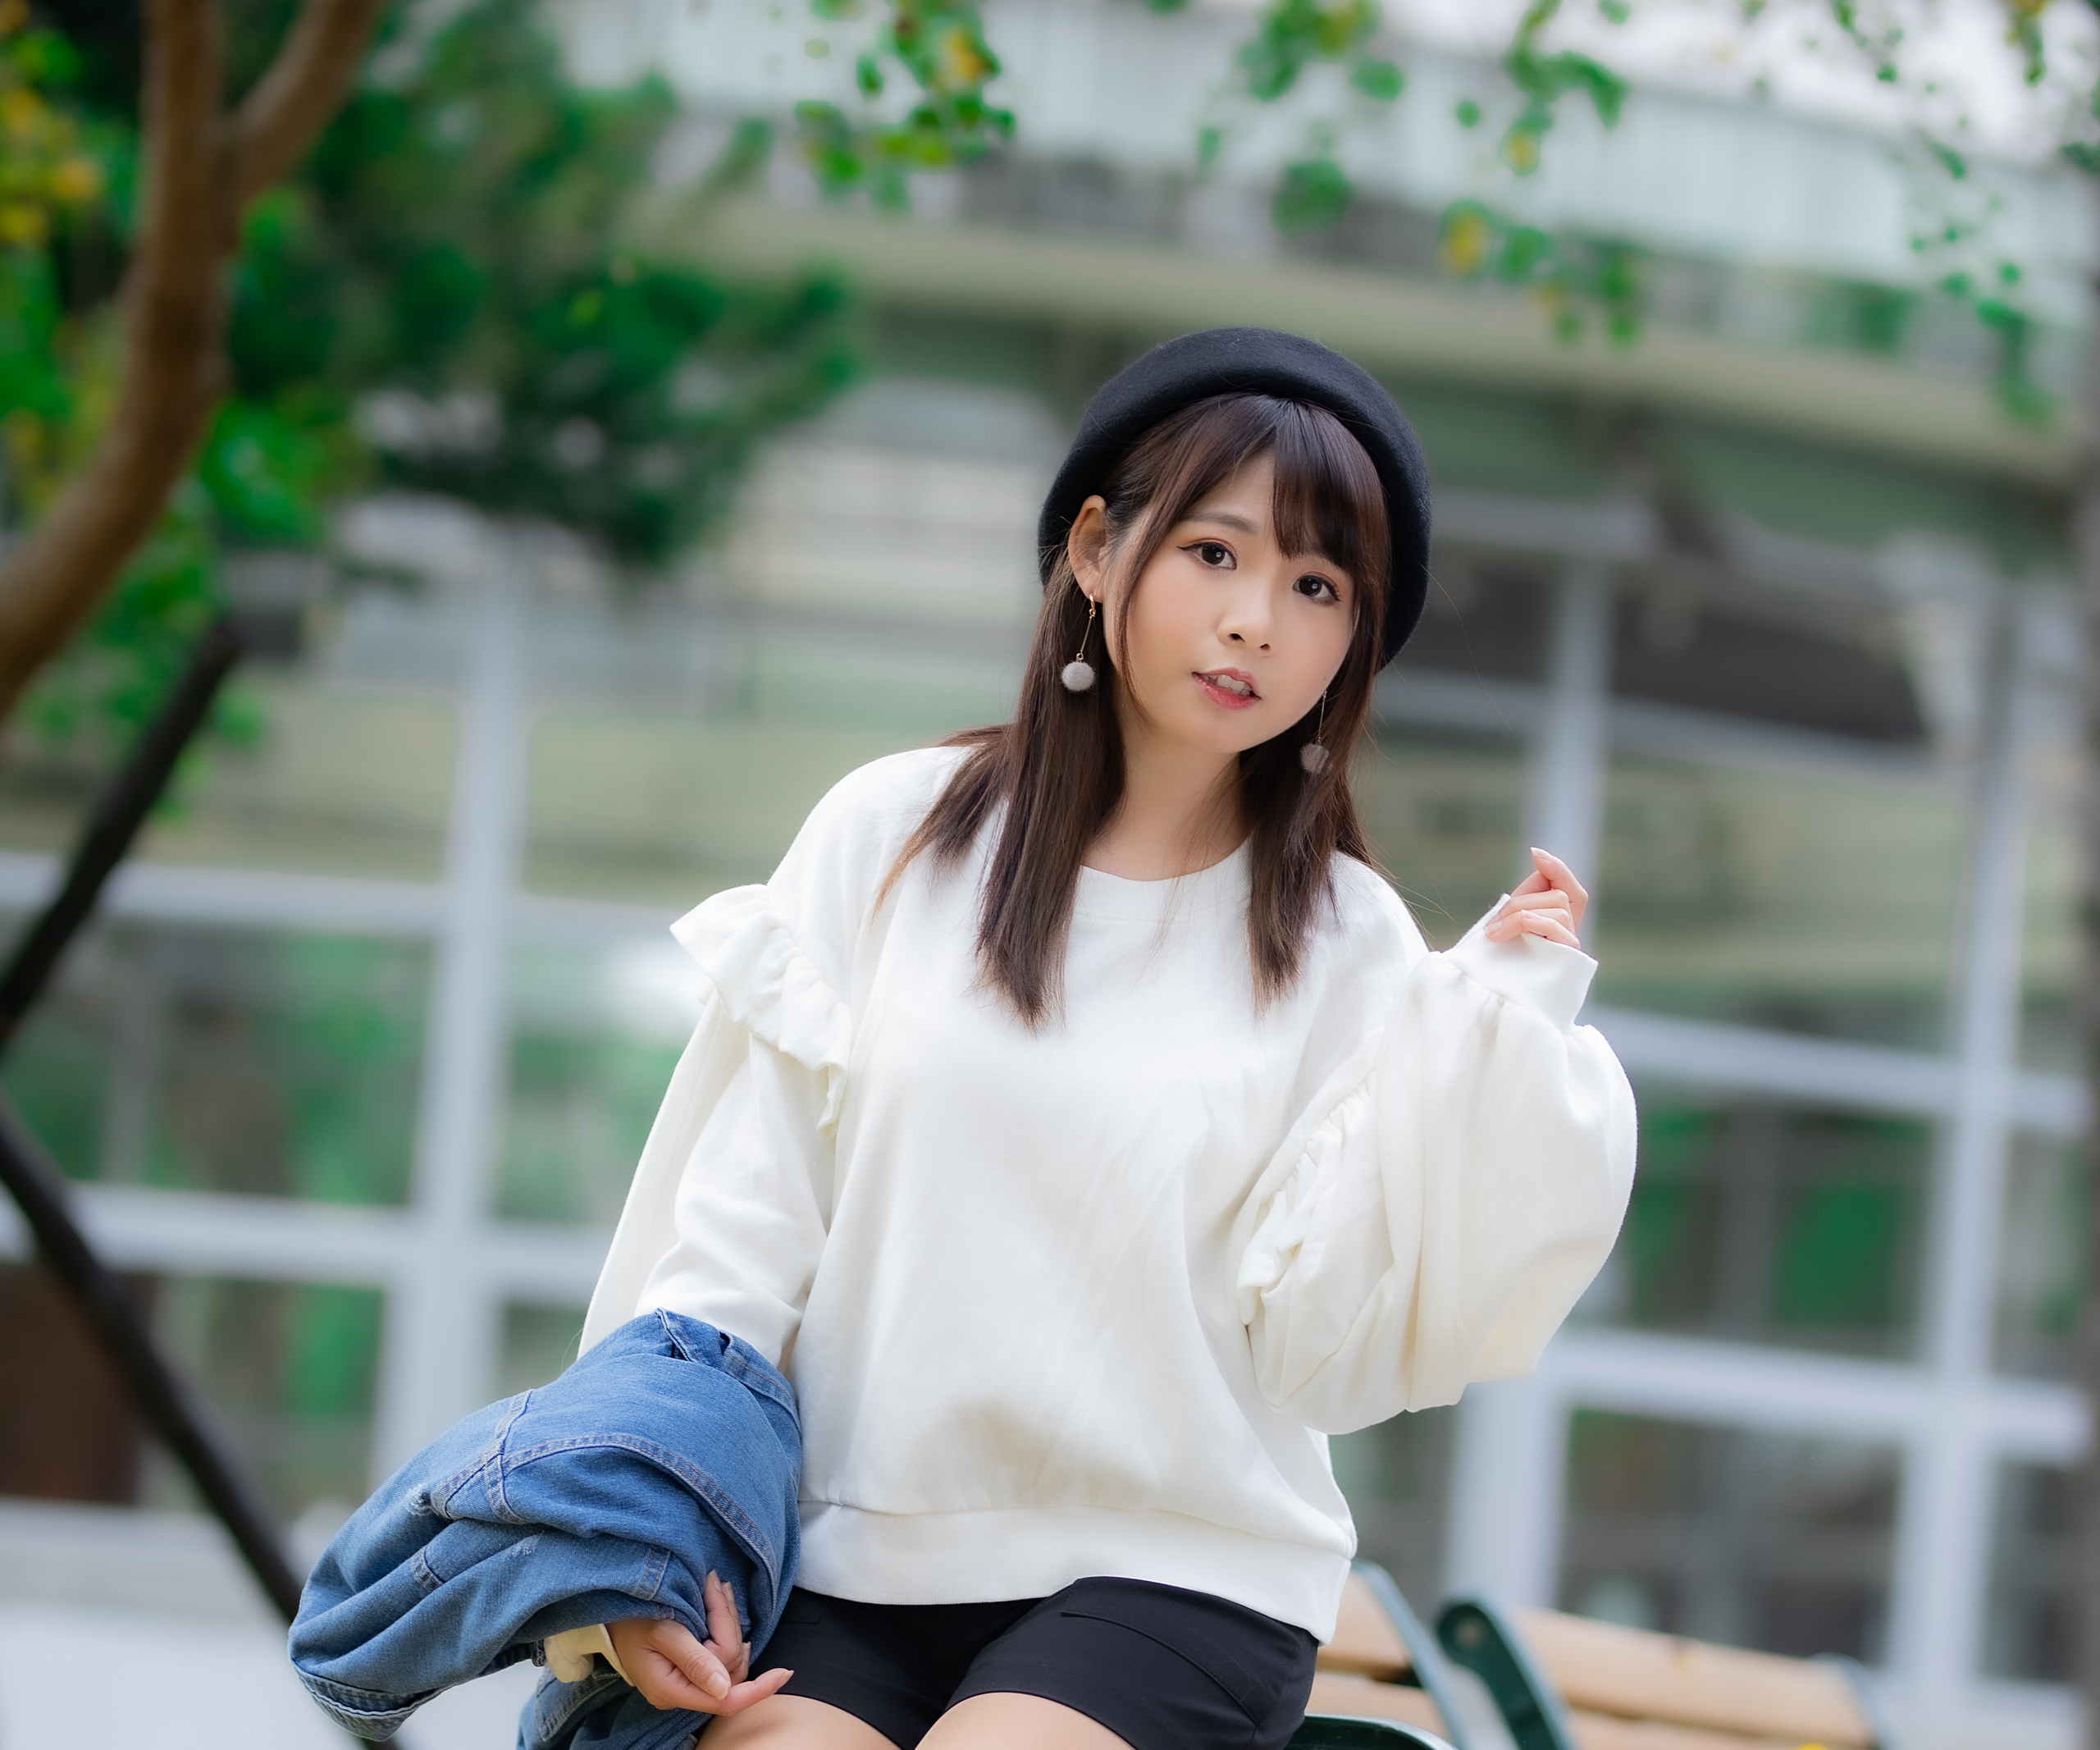 Asian Model Women Long Hair Brunette Depth Of Field Berets Jeans Jacket Trees Earring Pullover Black 2560x2133